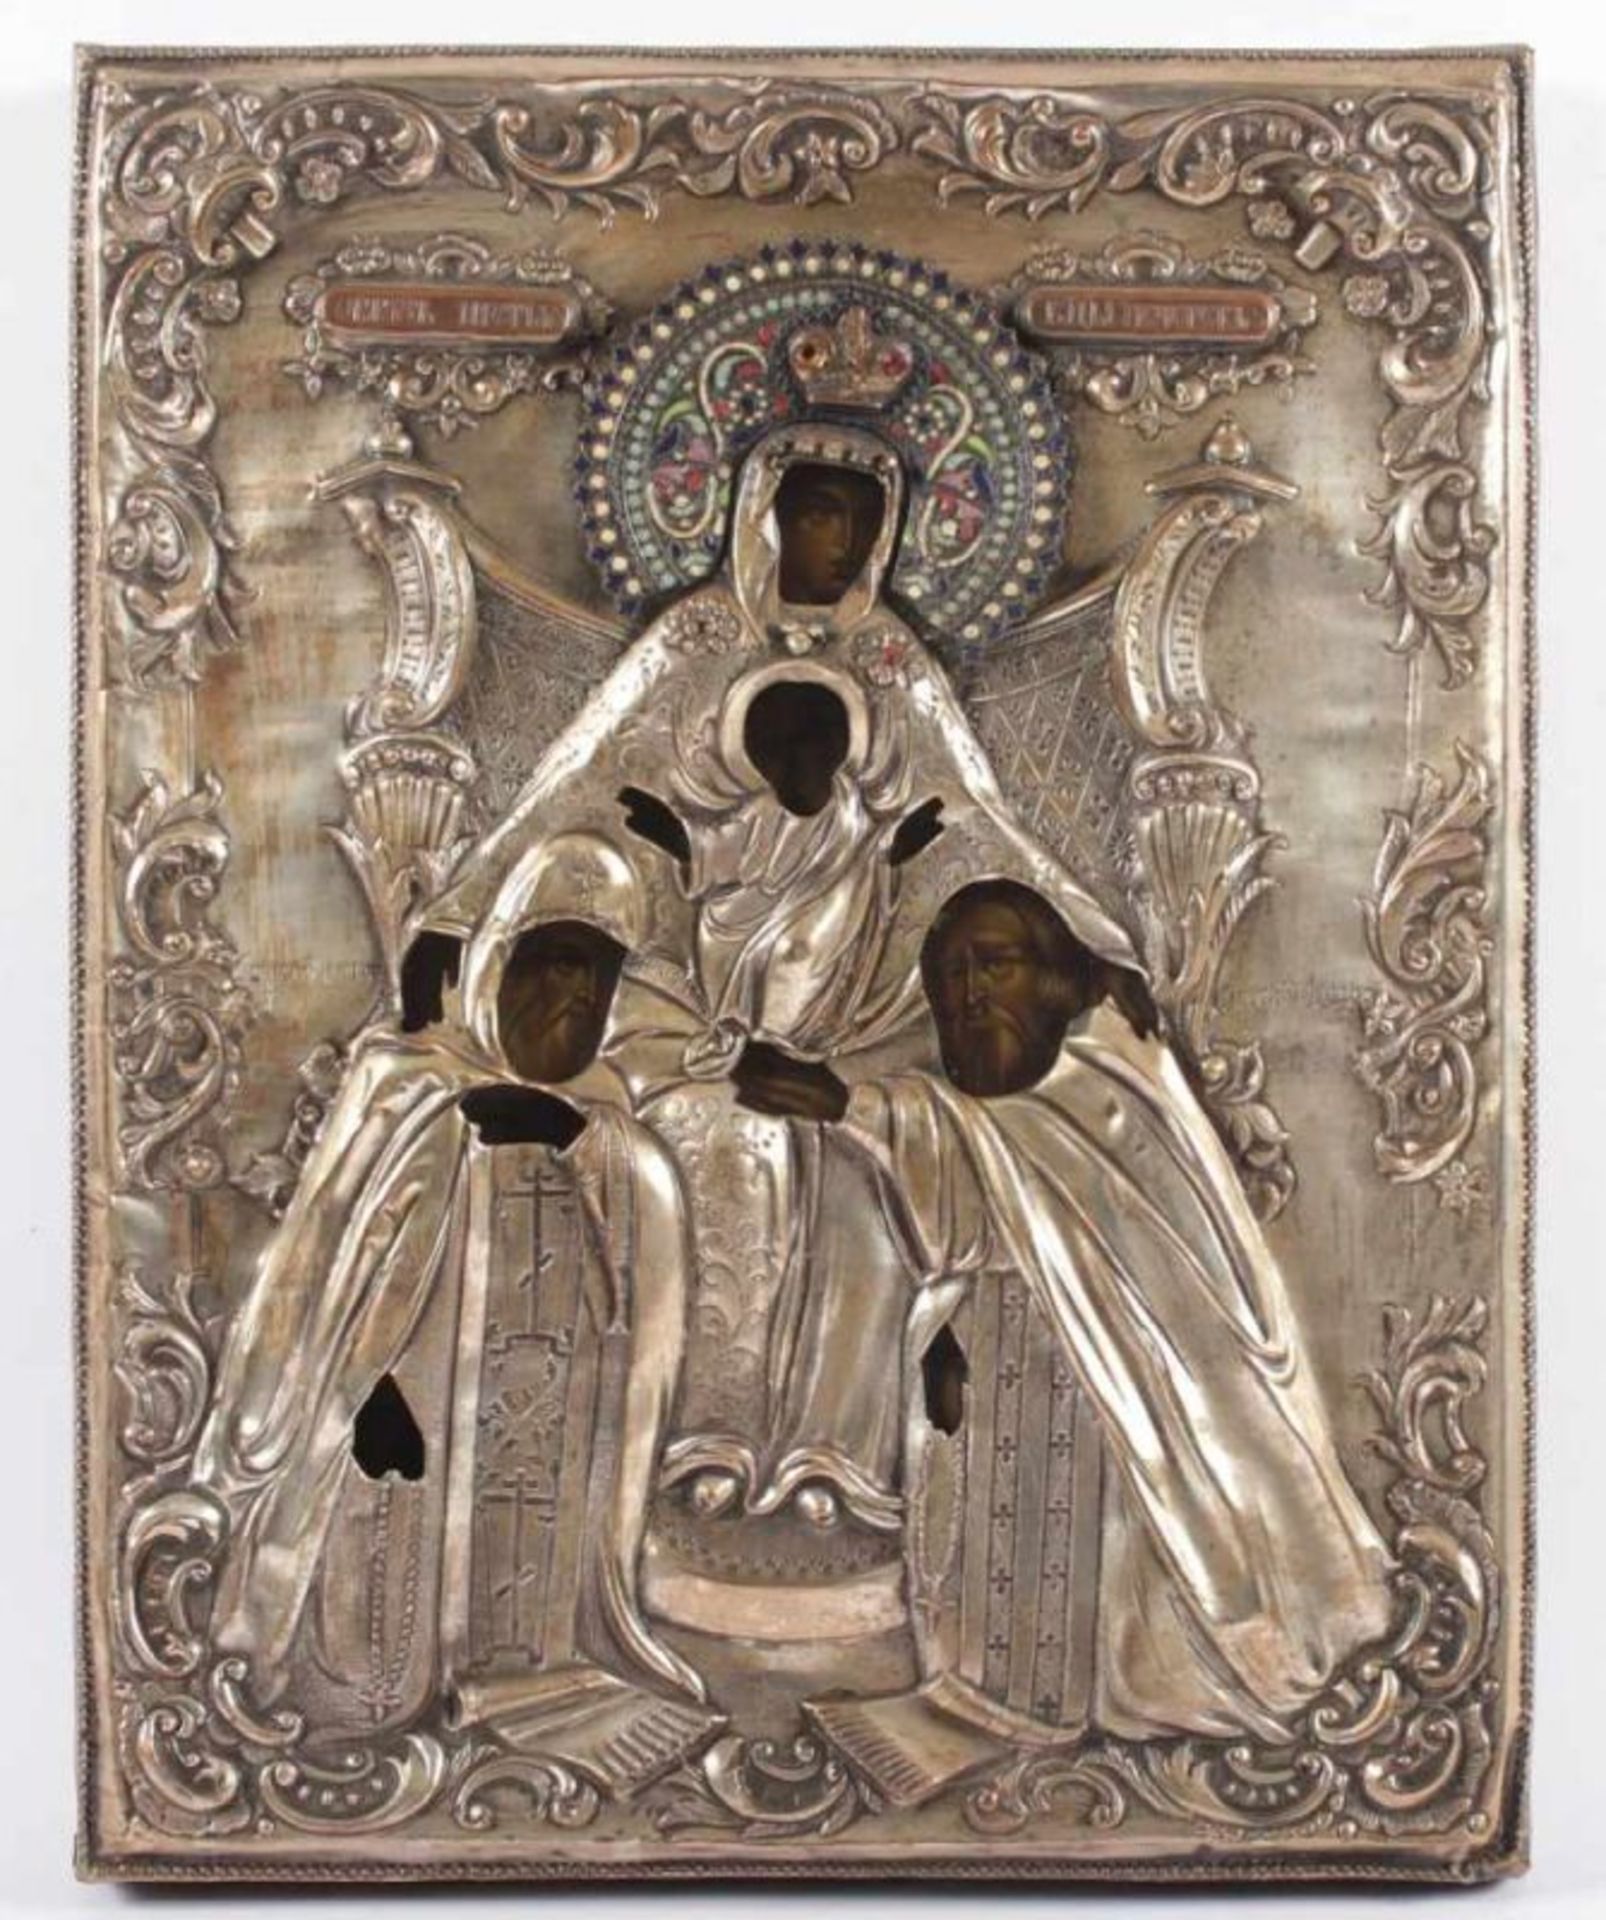 IKONE, "Gottesmutter", Tempera, 35 x 28, mit versilbertem Oklad, besetzt mit Schmucksteinen und